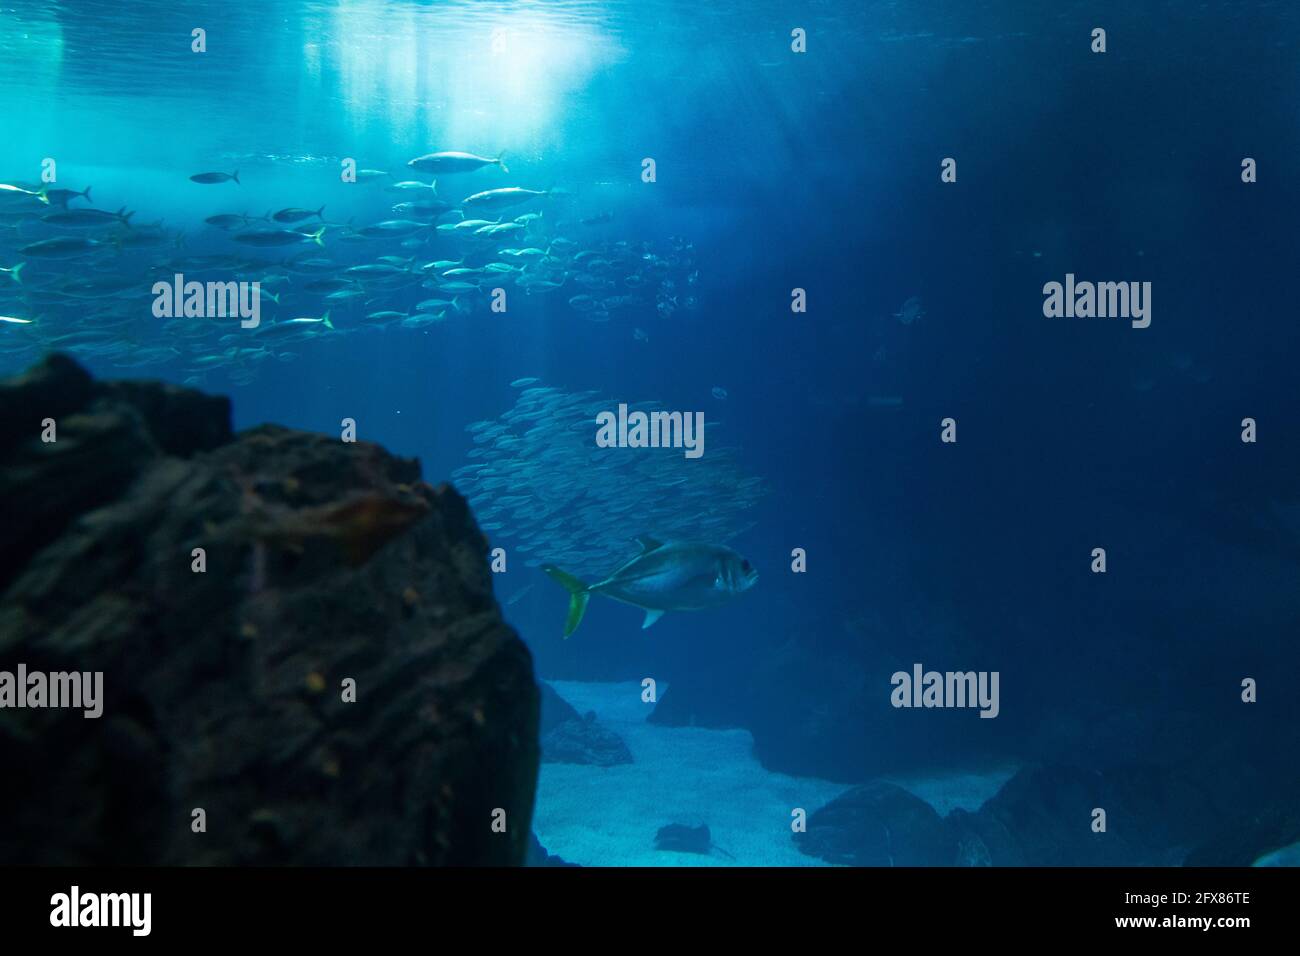 serbatoio di pesce con diverse specie. Fotografia subacquea. Foto Stock